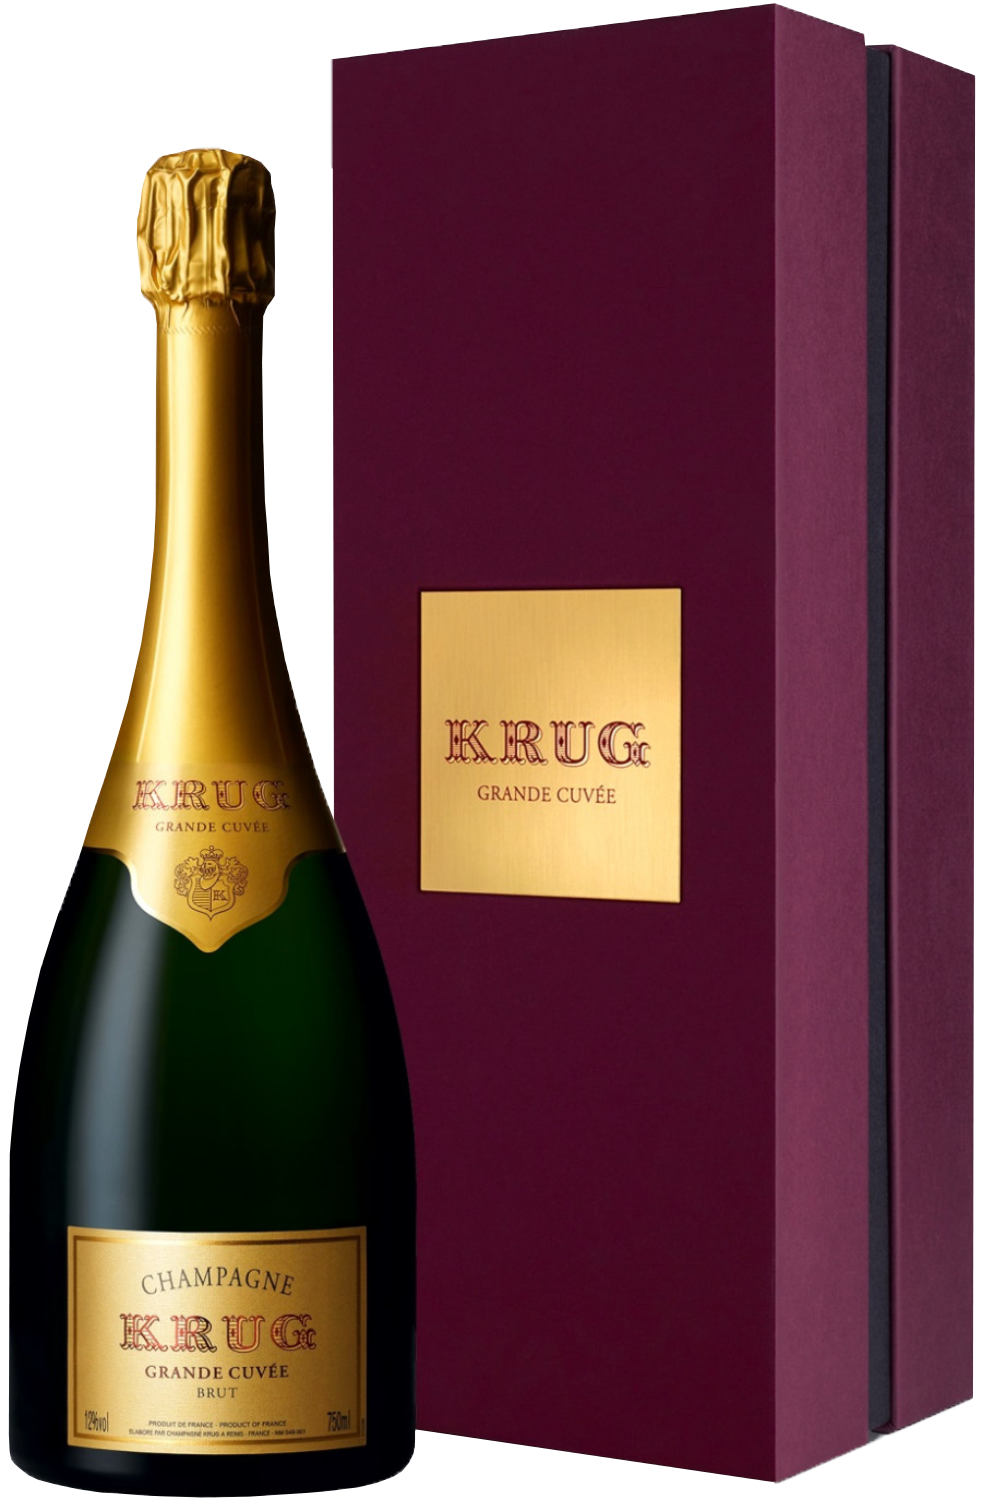 Krug Grande Cuvee Brut Champagne AOC (gift box)